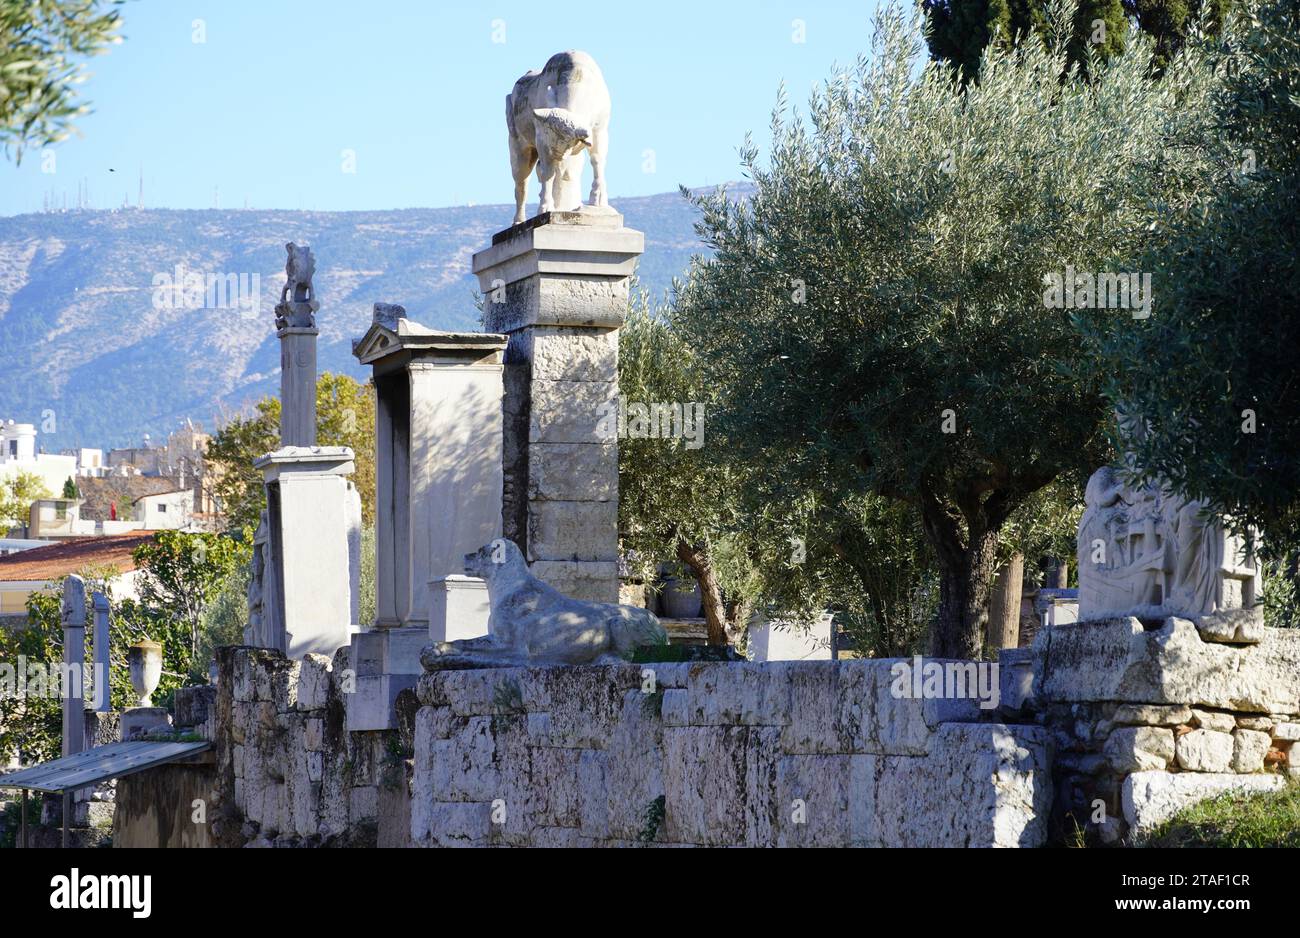 Ruines antiques dans le cimetière de Keramikos. Vieux mémoriaux funéraires, colonnes, statues Banque D'Images